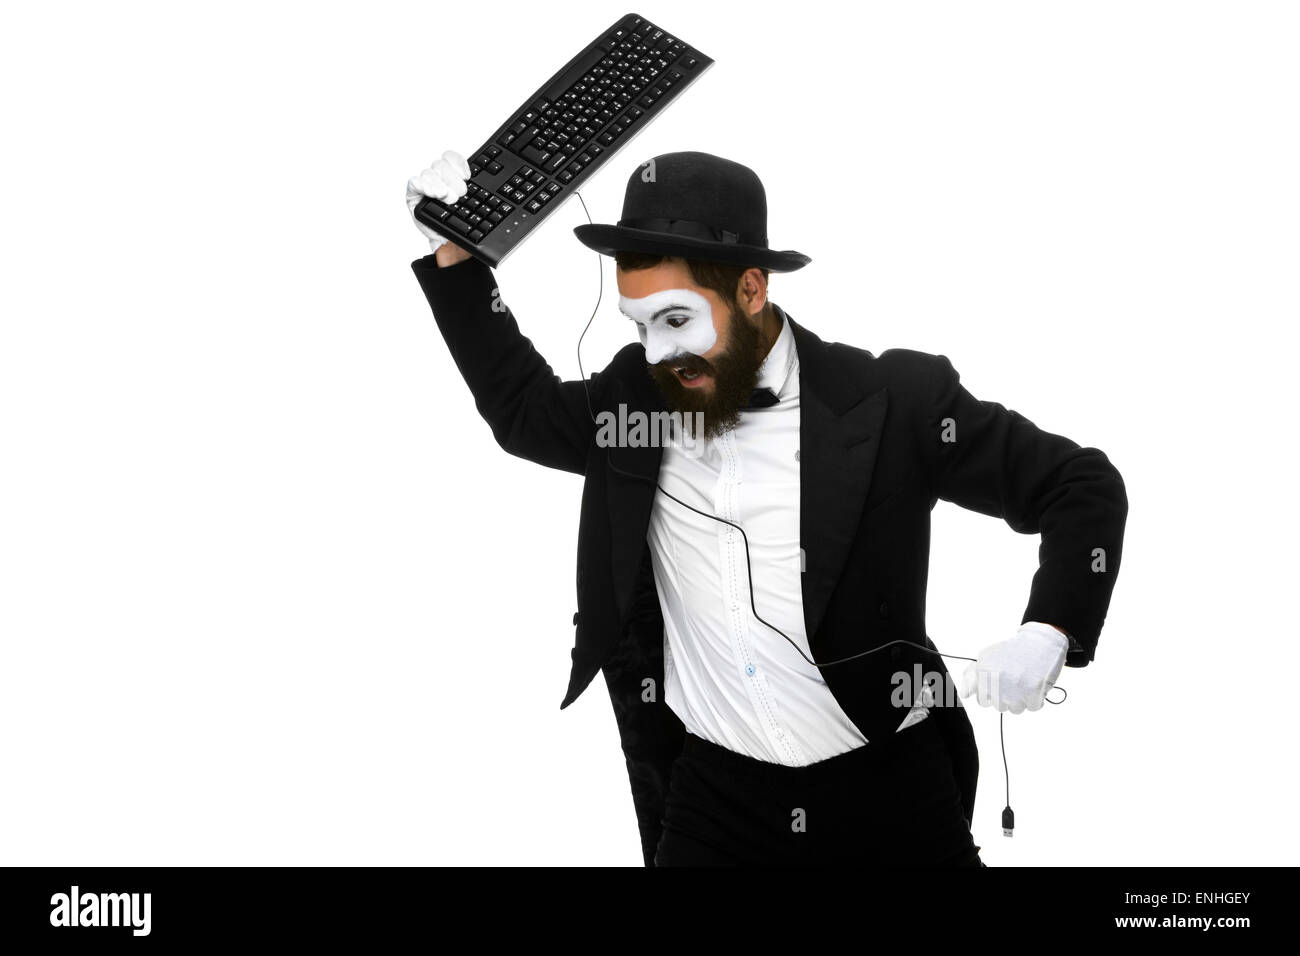 Wütend Mime als Geschäftsmann ist Tastatur zerstören Stockfotografie - Alamy